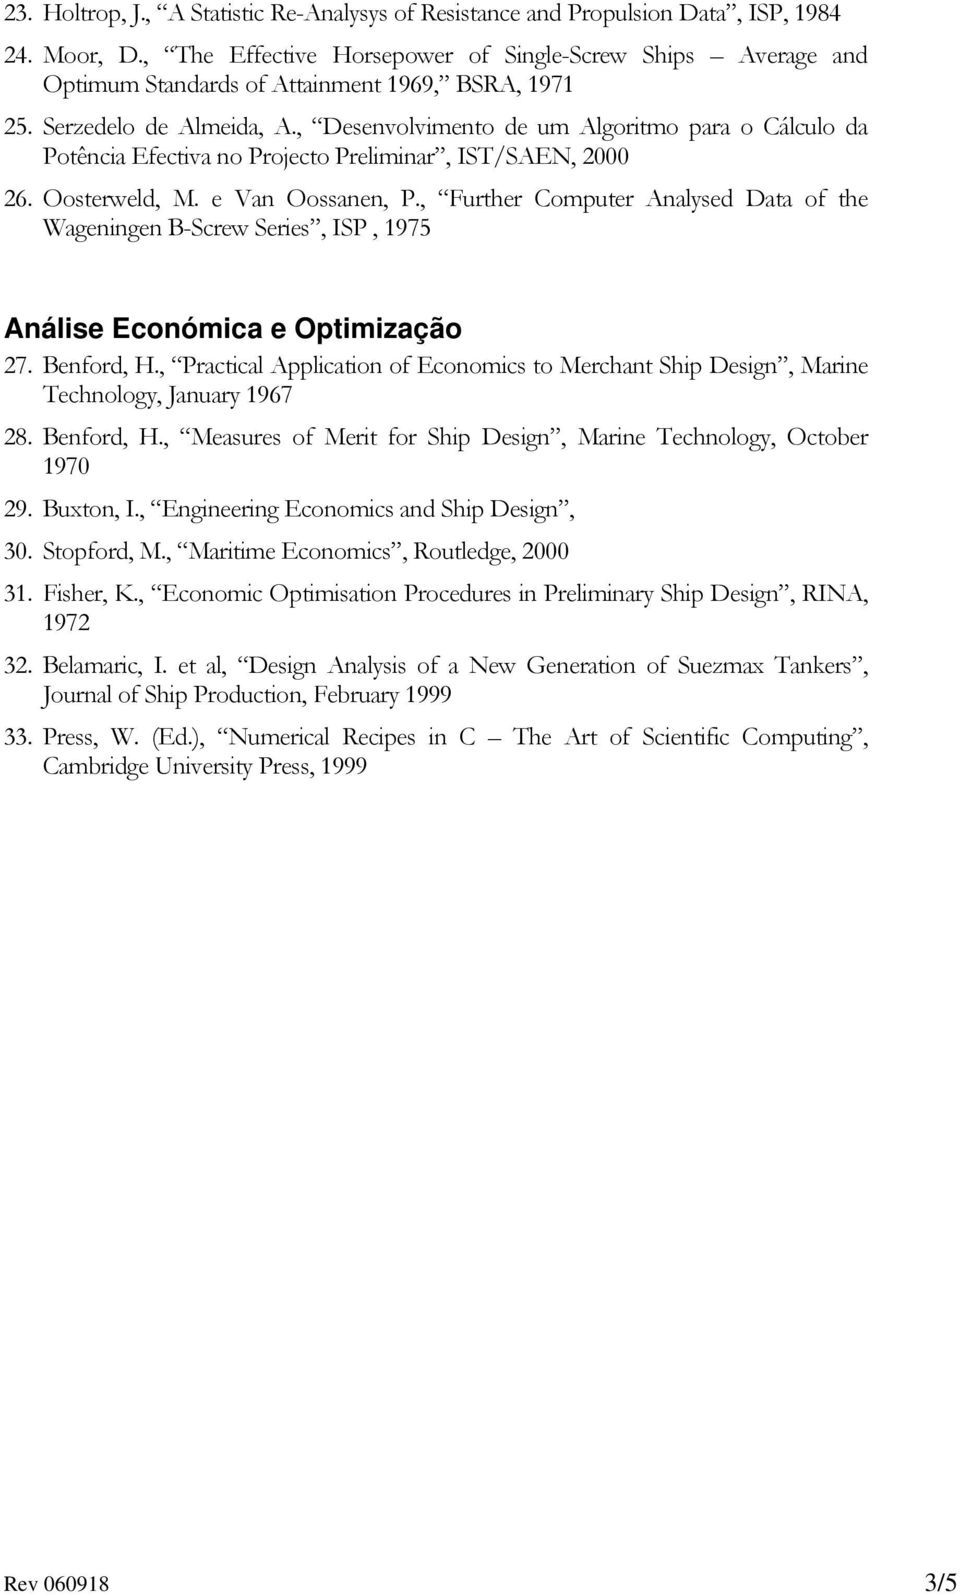 , Desenvolvimento de um Algoritmo para o Cálculo da Potência Efectiva no Projecto Preliminar, IST/SAEN, 2000 26. Oosterweld, M. e Van Oossanen, P.